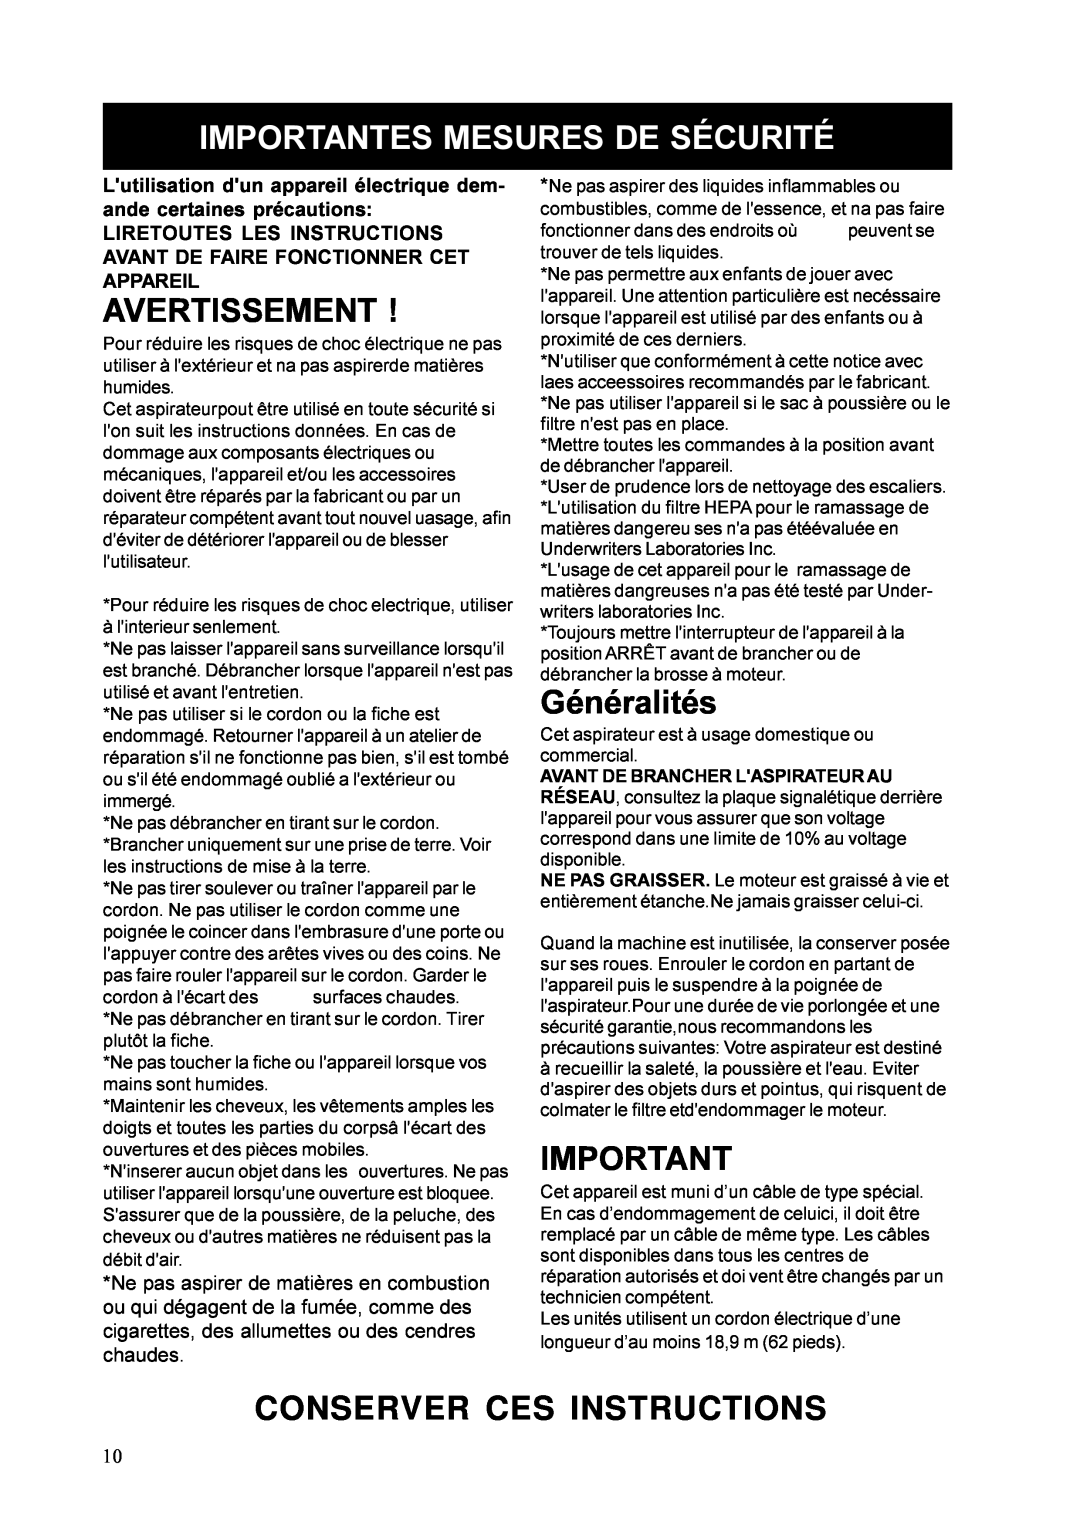 Nilfisk-ALTO 878B, UZ 878 manual Avertissement, Généralités, Importantes Mesures De Sécurité, Conserver Ces Instructions 